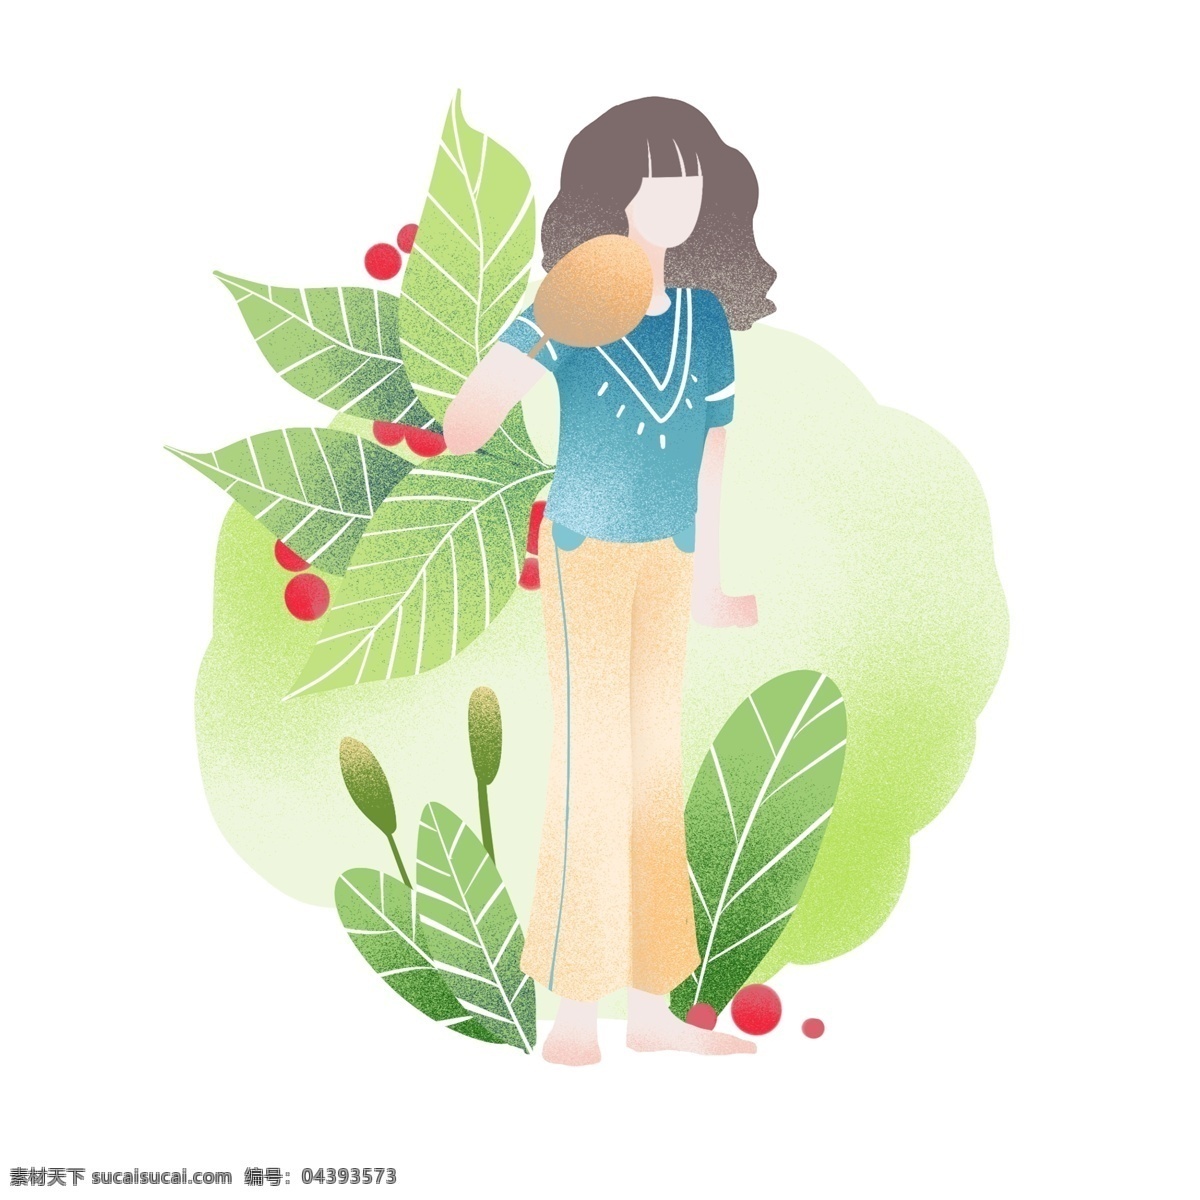 立夏 夏天 卡通 插画 绿色的植物 卡通插画 节日插画 二十四节气 立夏的插画 红色的果实